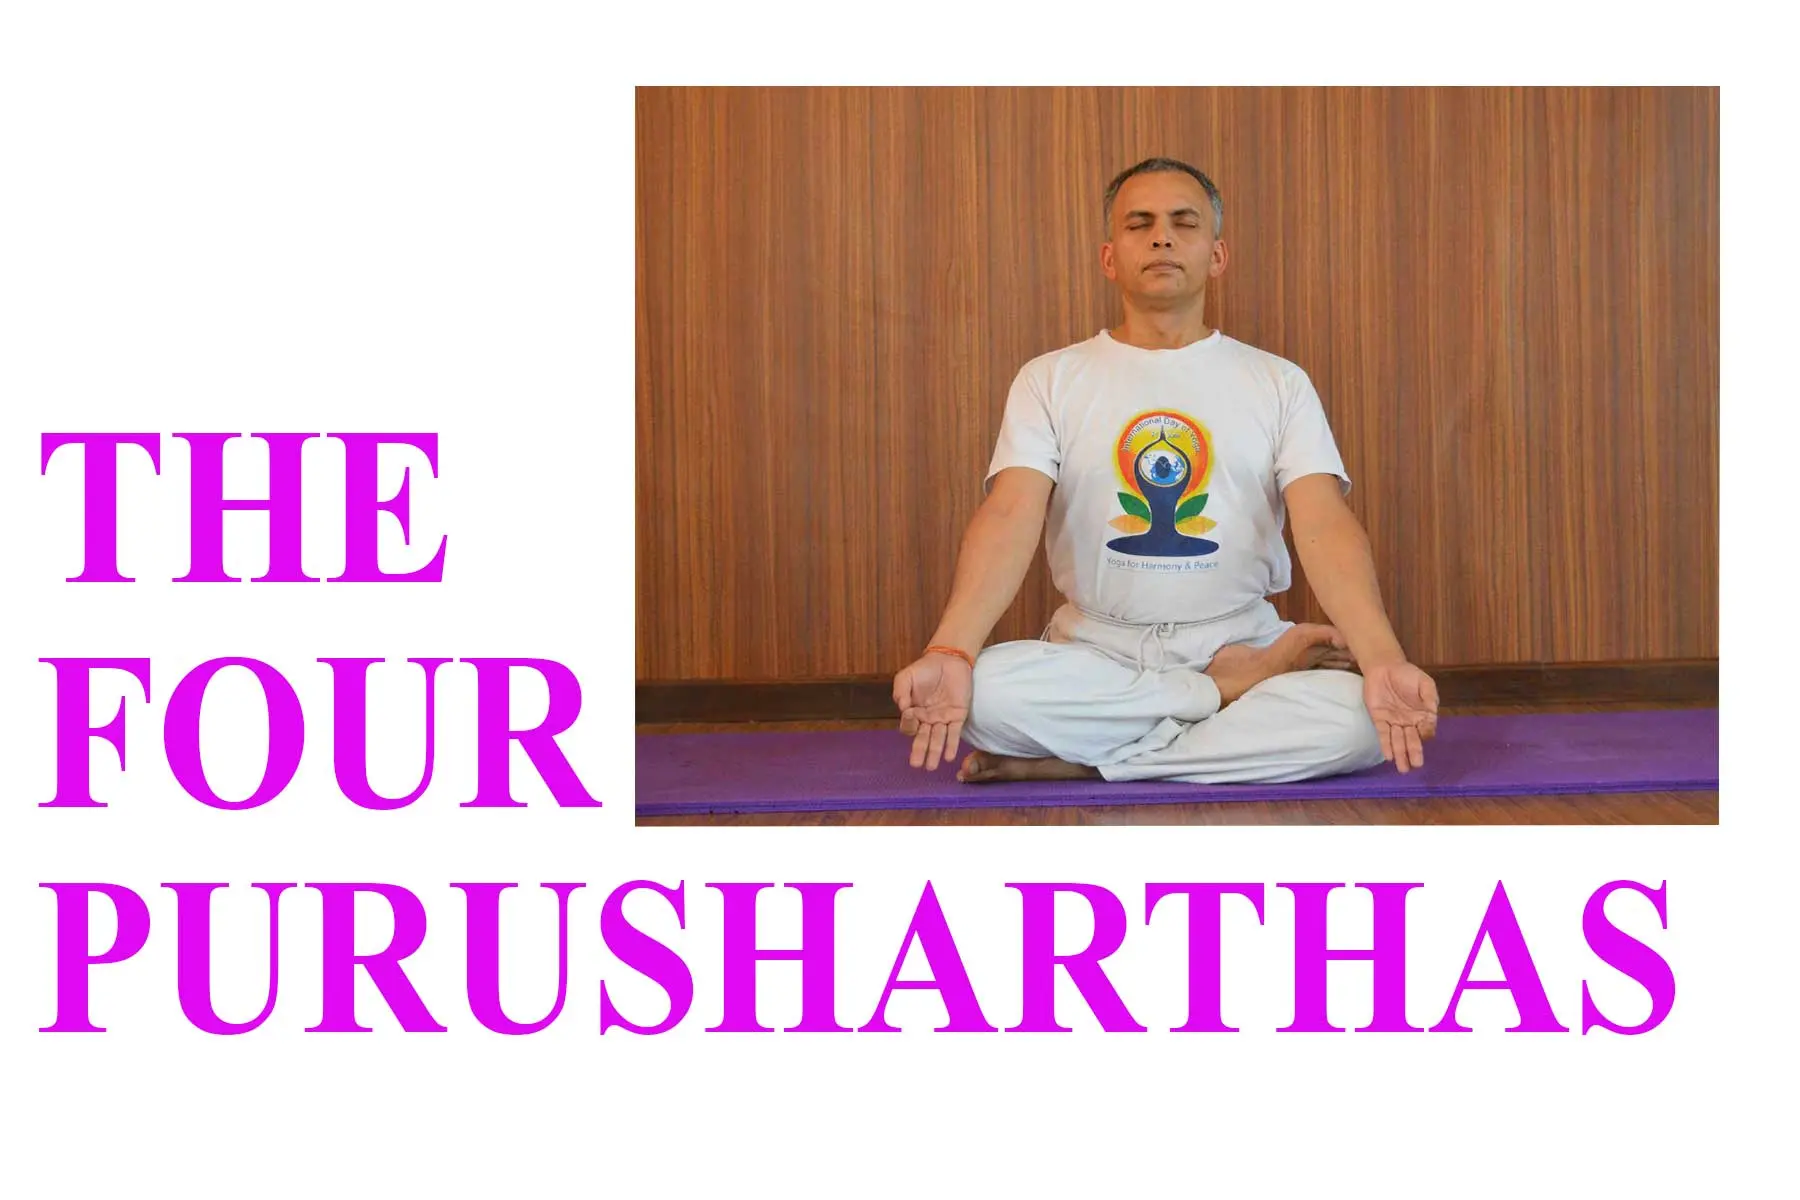 purusharthas yoga - Cuántos Purusharthas son centrales en el hinduismo